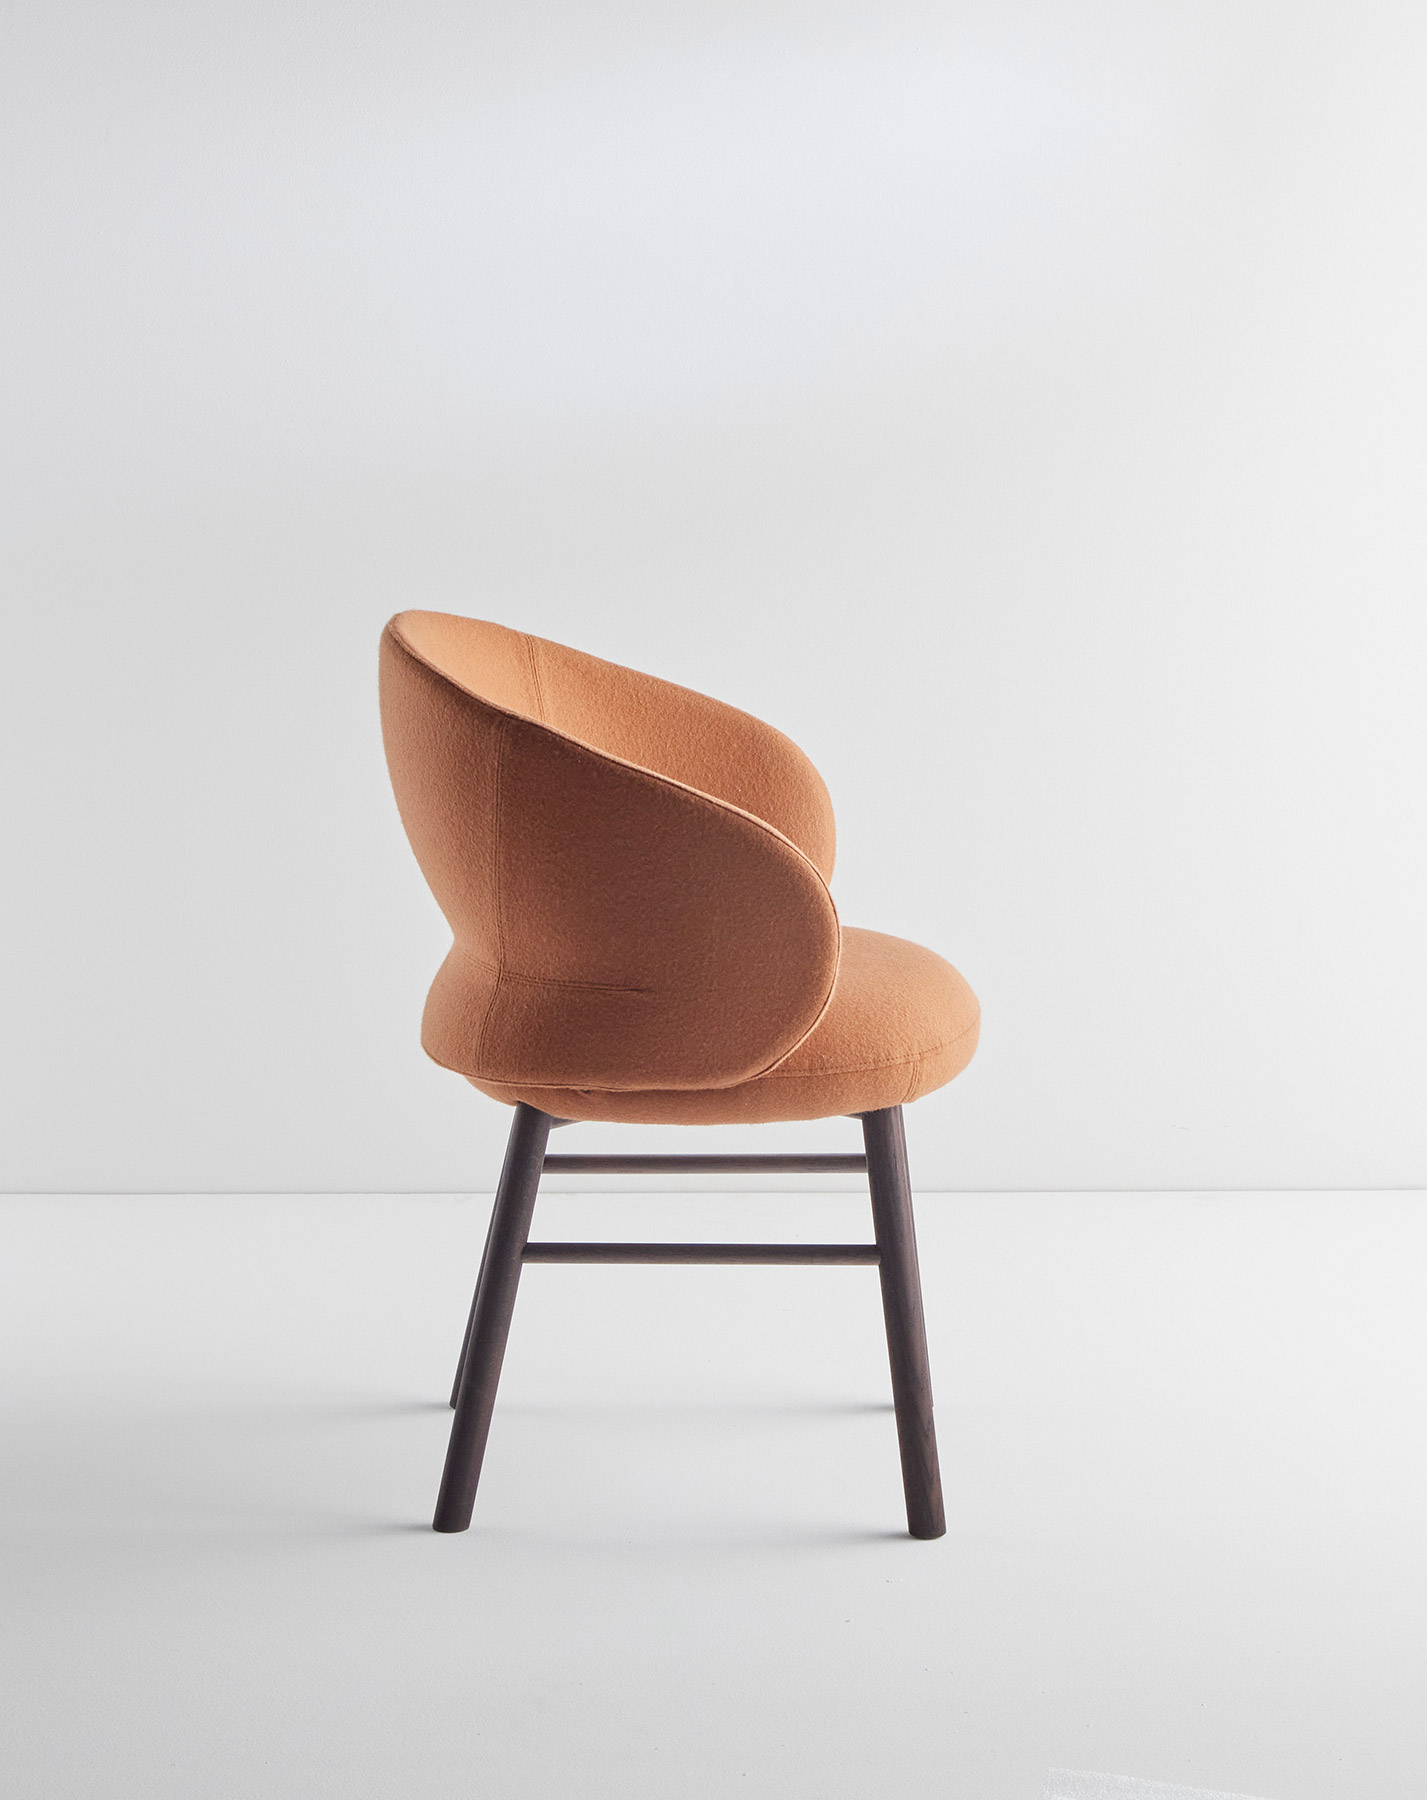 Alki presenta Pottolo, una nueva colección de asientos cómodos y redondeados, diseñados por el estudio Iratzoki & Lizaso